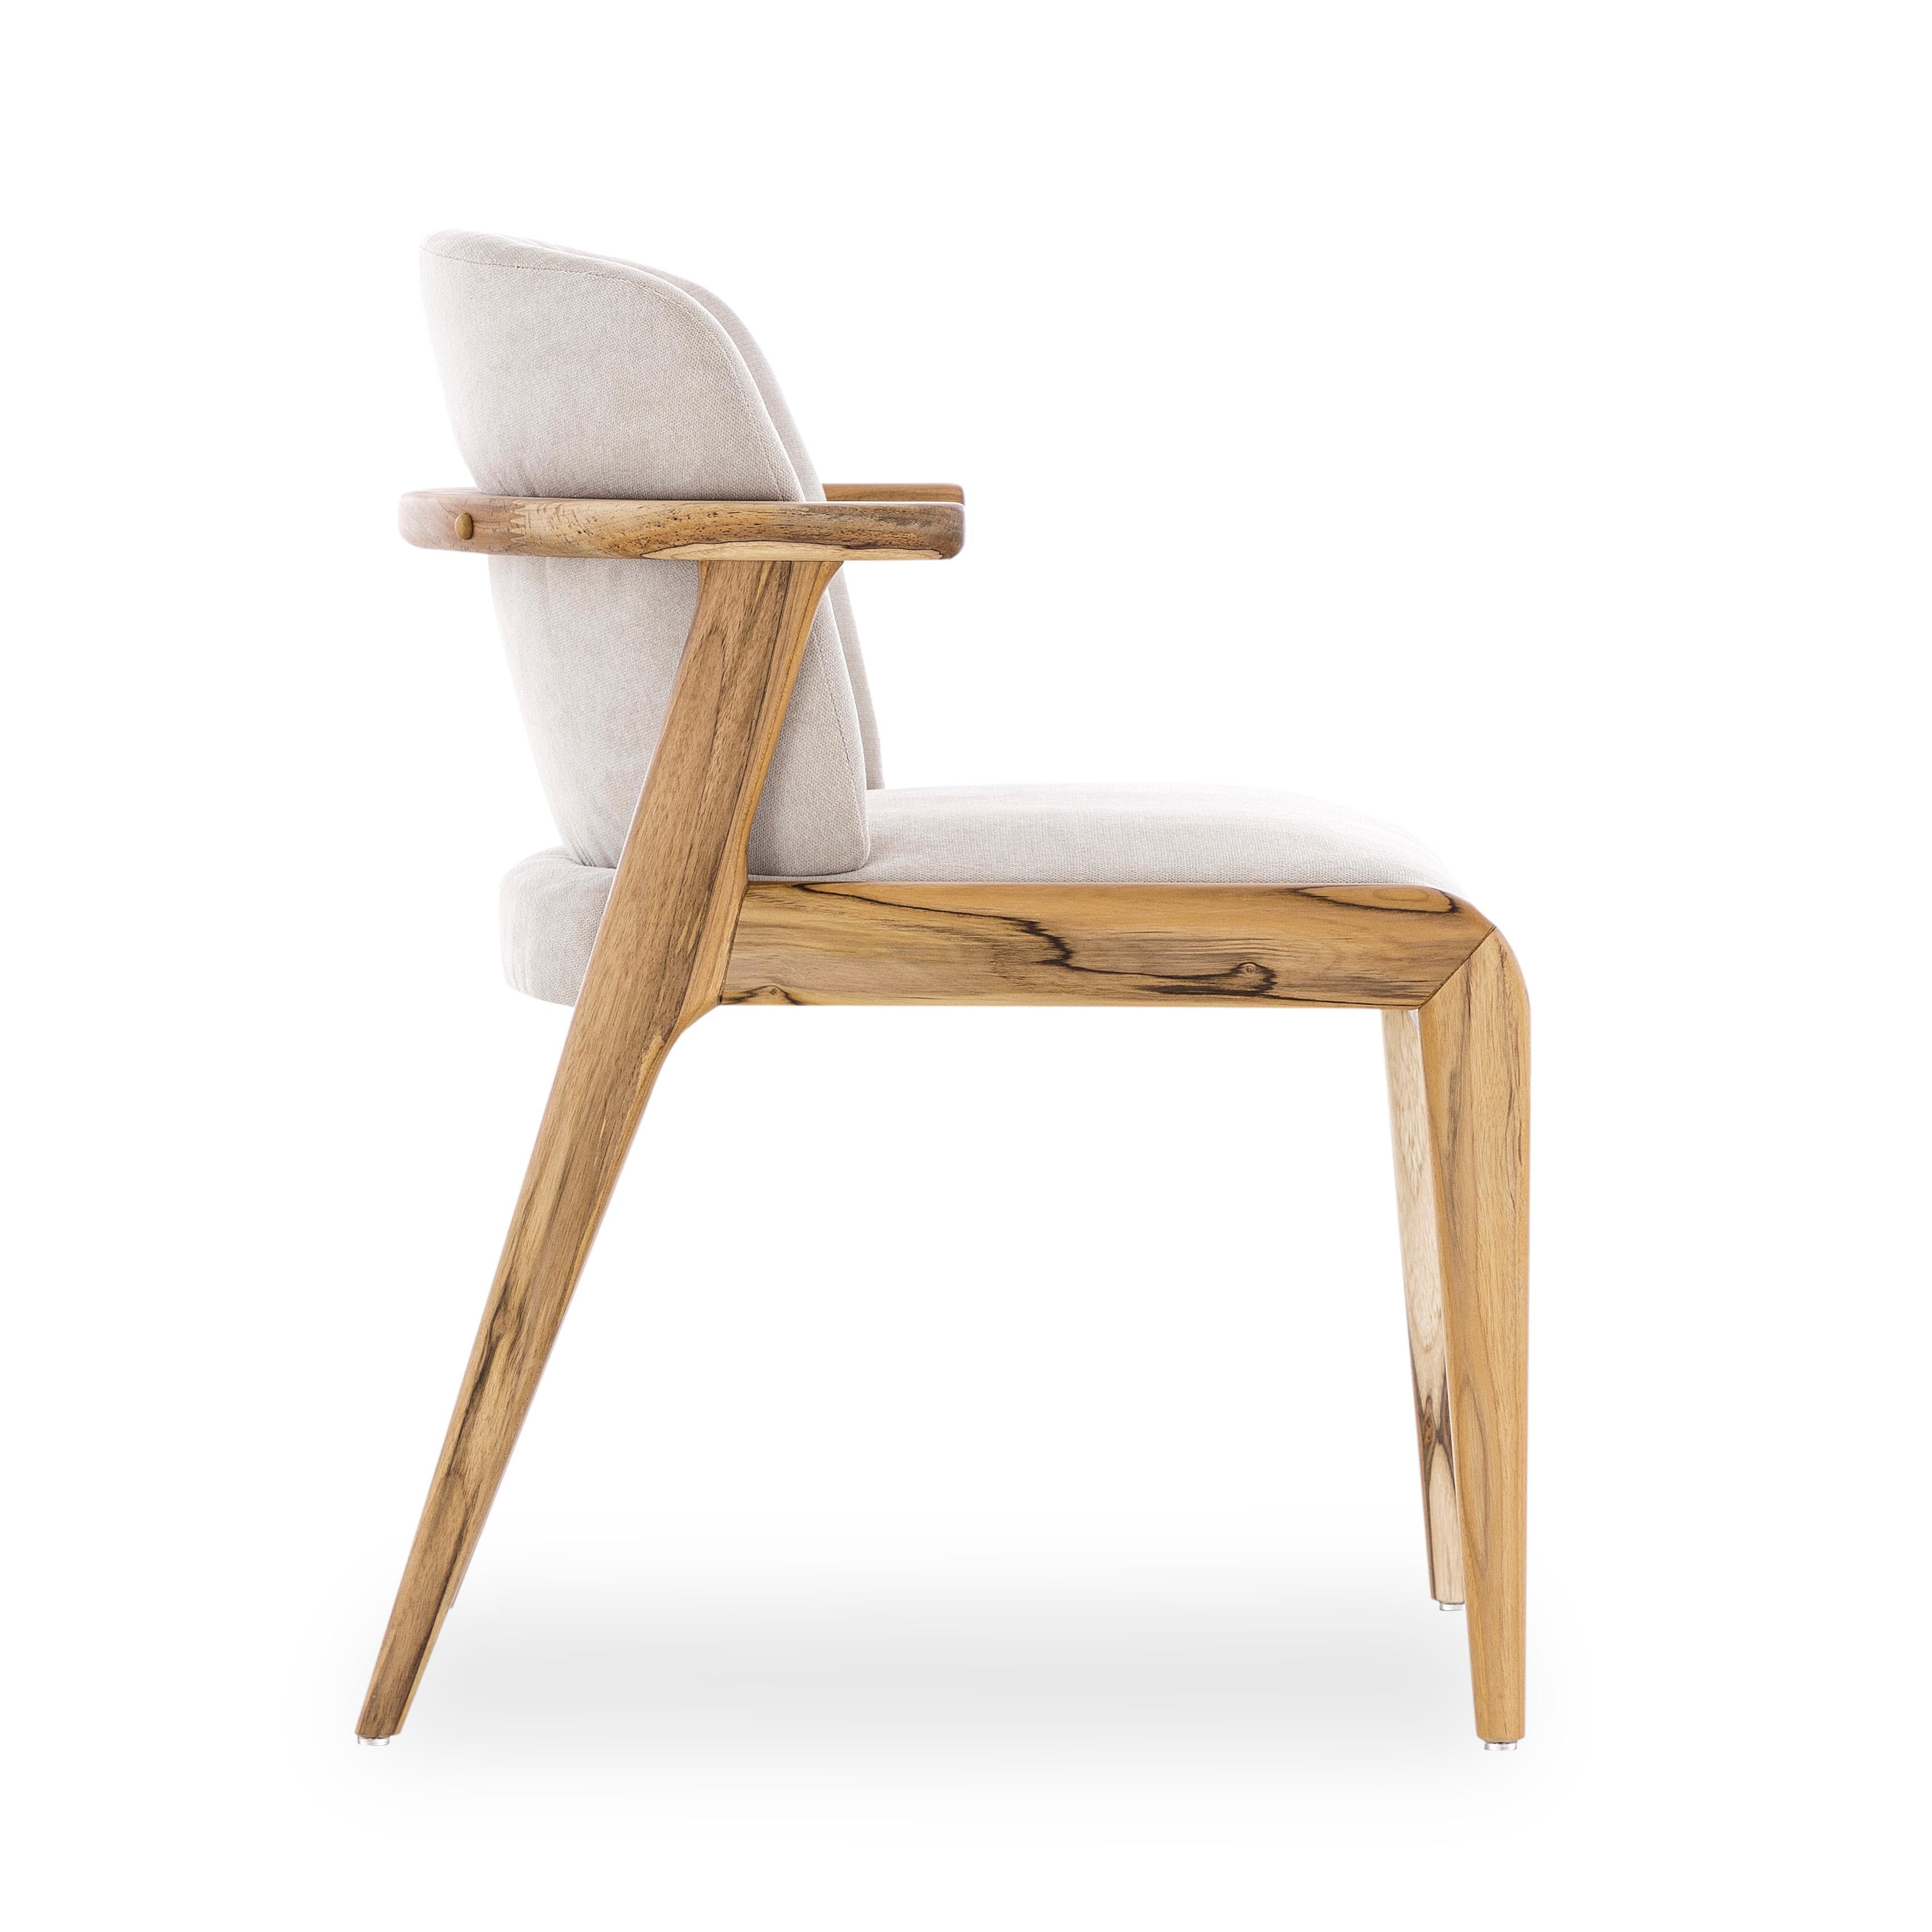 Das kreative Team von Uultis hat diesen Esszimmerstuhl entworfen, um den Raum der Familie zu verschönern. Der Rahmen und die Beine sind aus Holz in Teakholzoptik gefertigt und mit einem schönen beigen Baumwollstoff kombiniert. Er ist ein bequemer